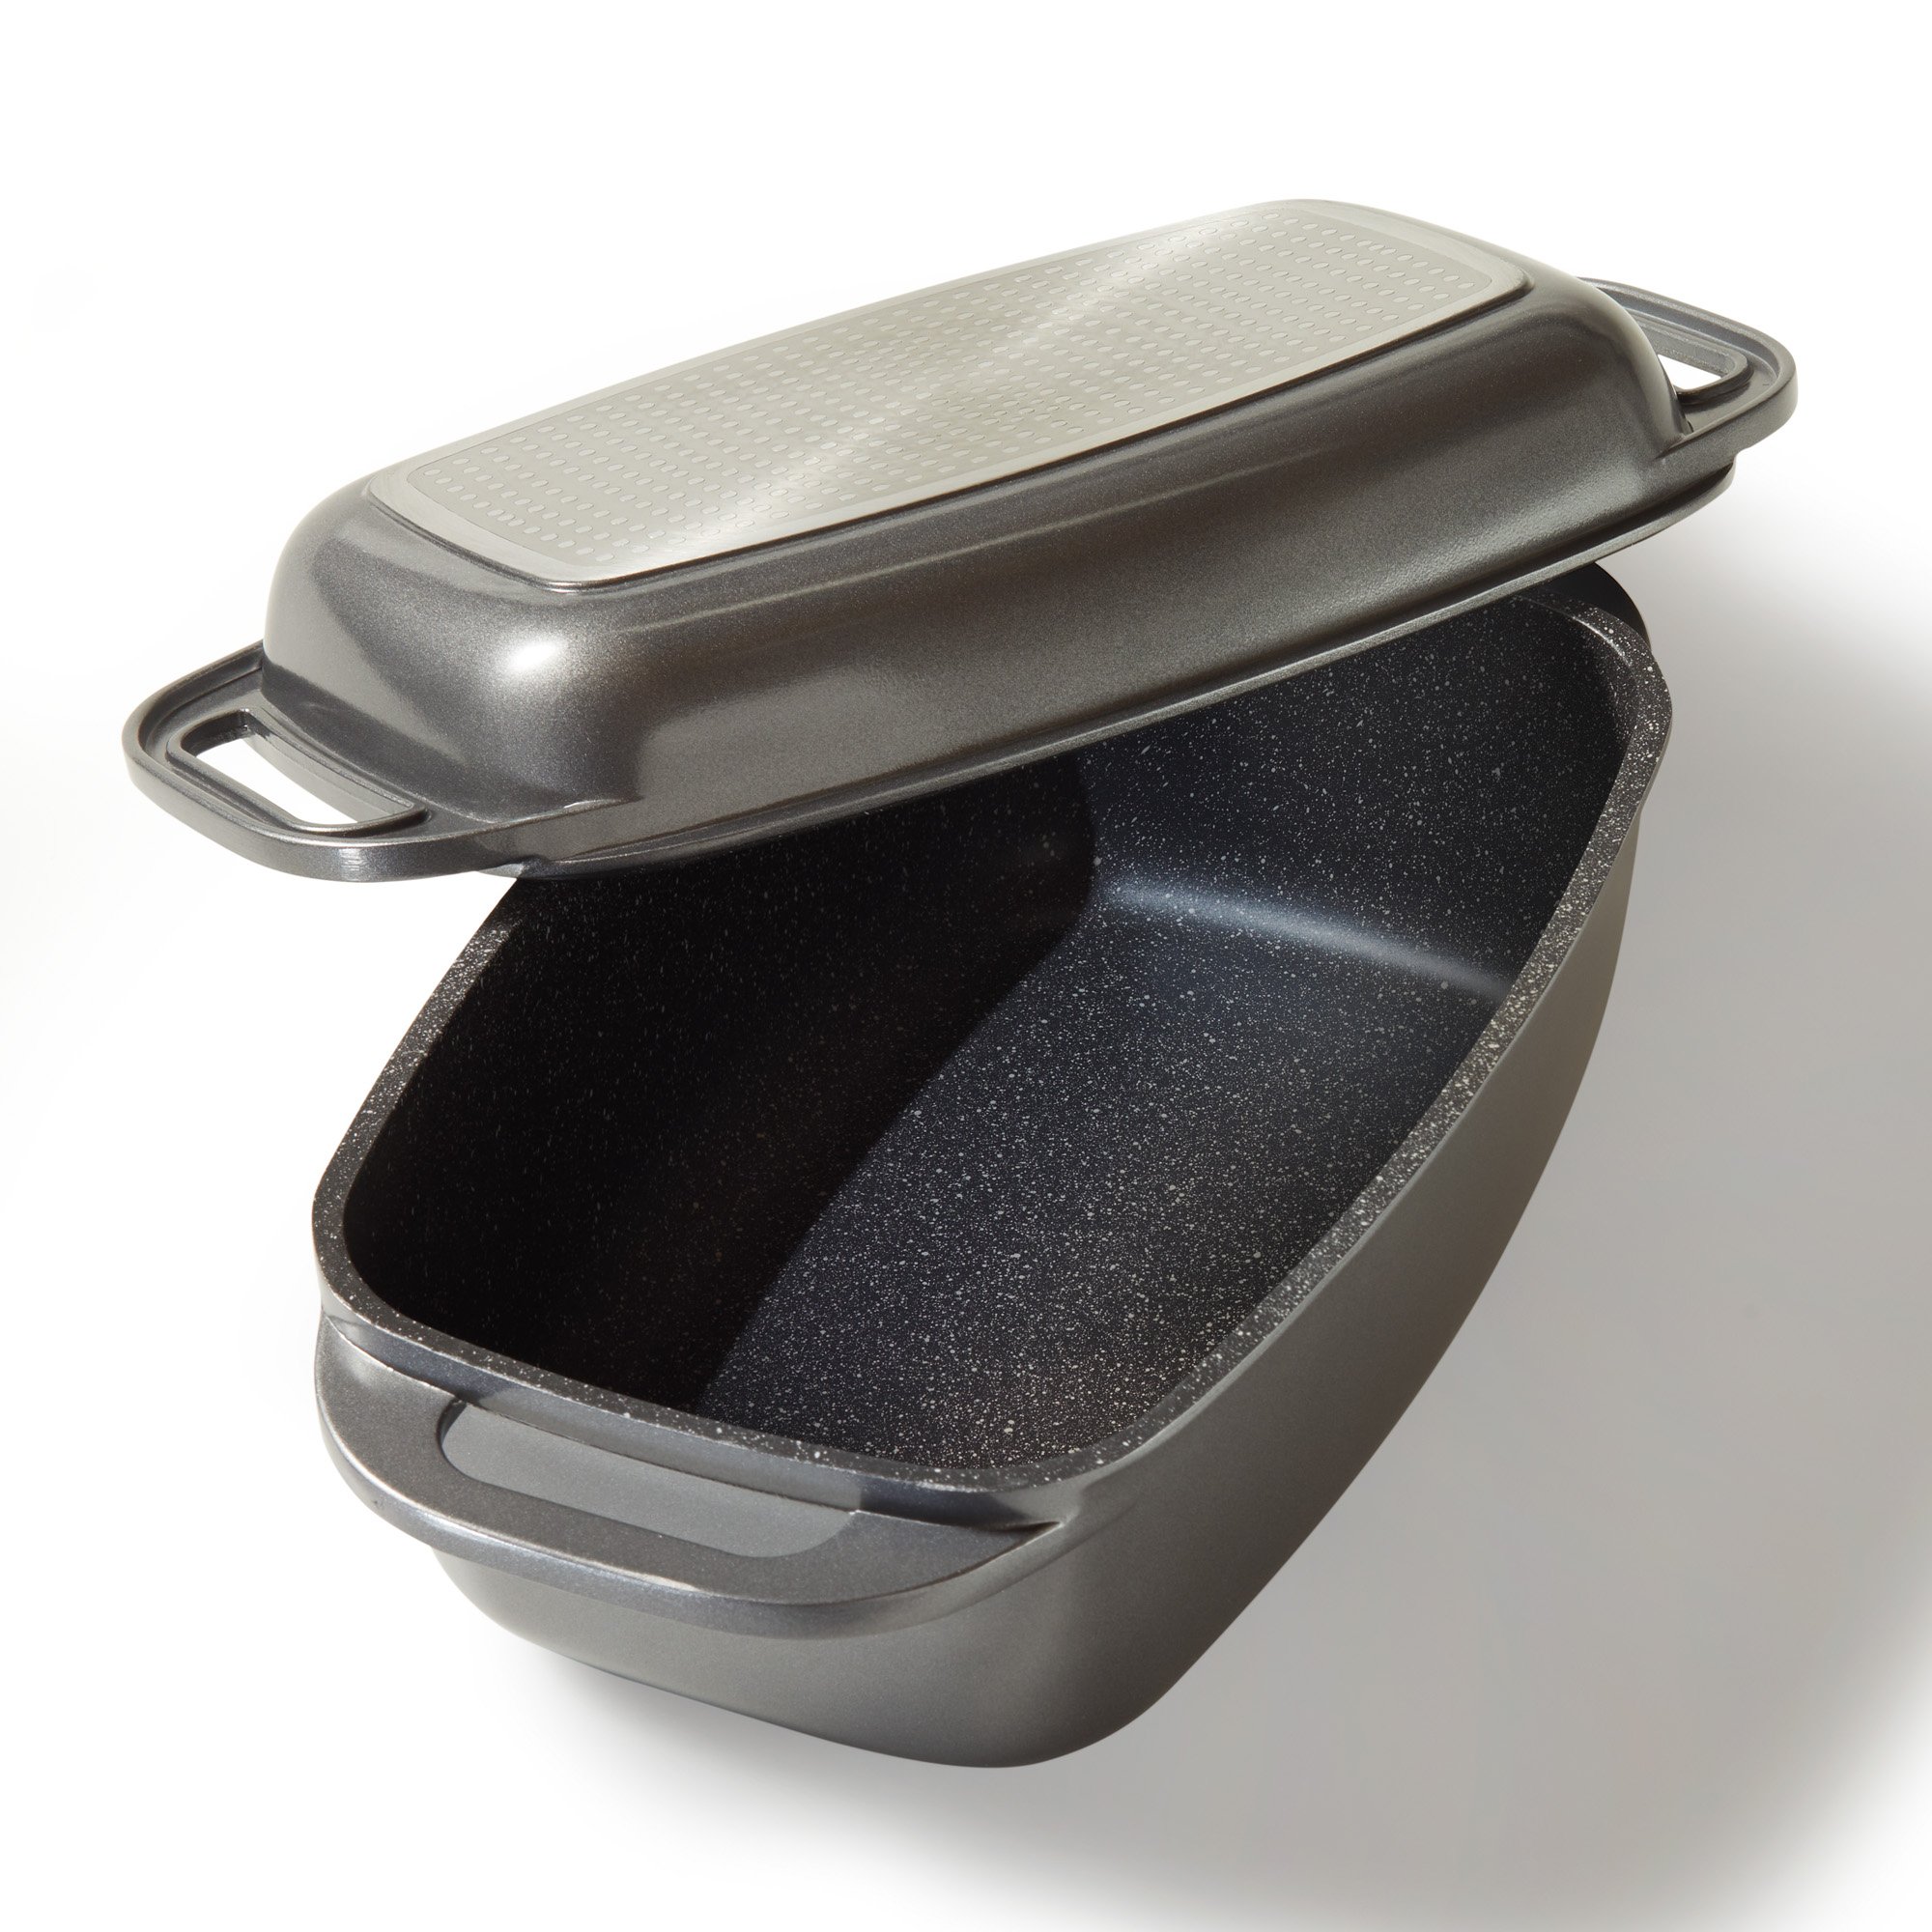 STONELINE® Tostadora 40 x 22 cm con tapa, apta para inducción y horno, revestimiento antiadherente, gris